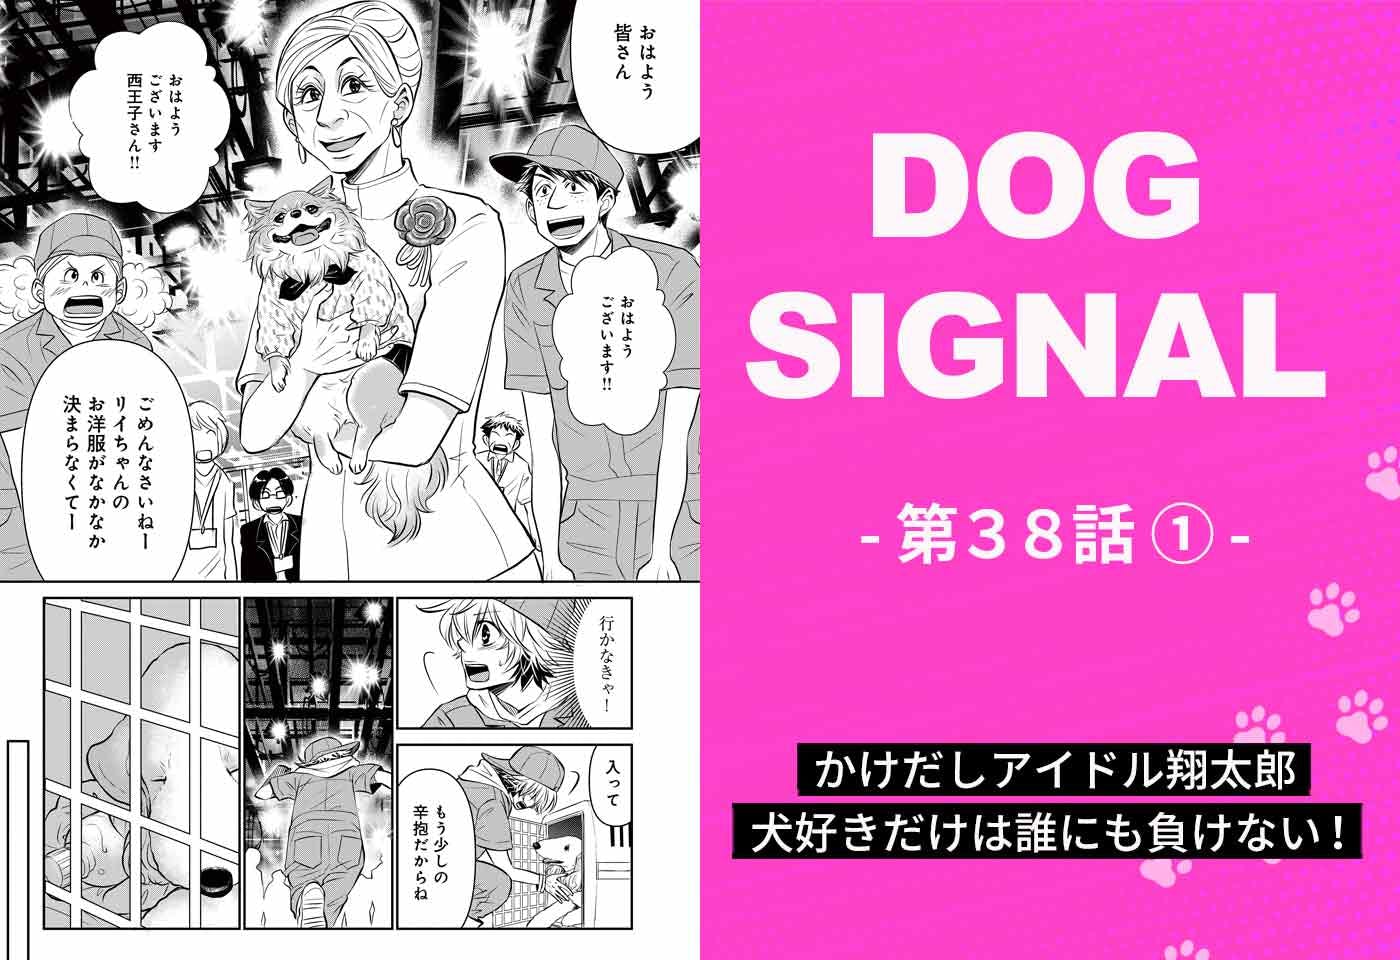 【最新話】『DOG SIGNAL』38話目1/4　犬好きアイドルがペット番組のレギュラーに！